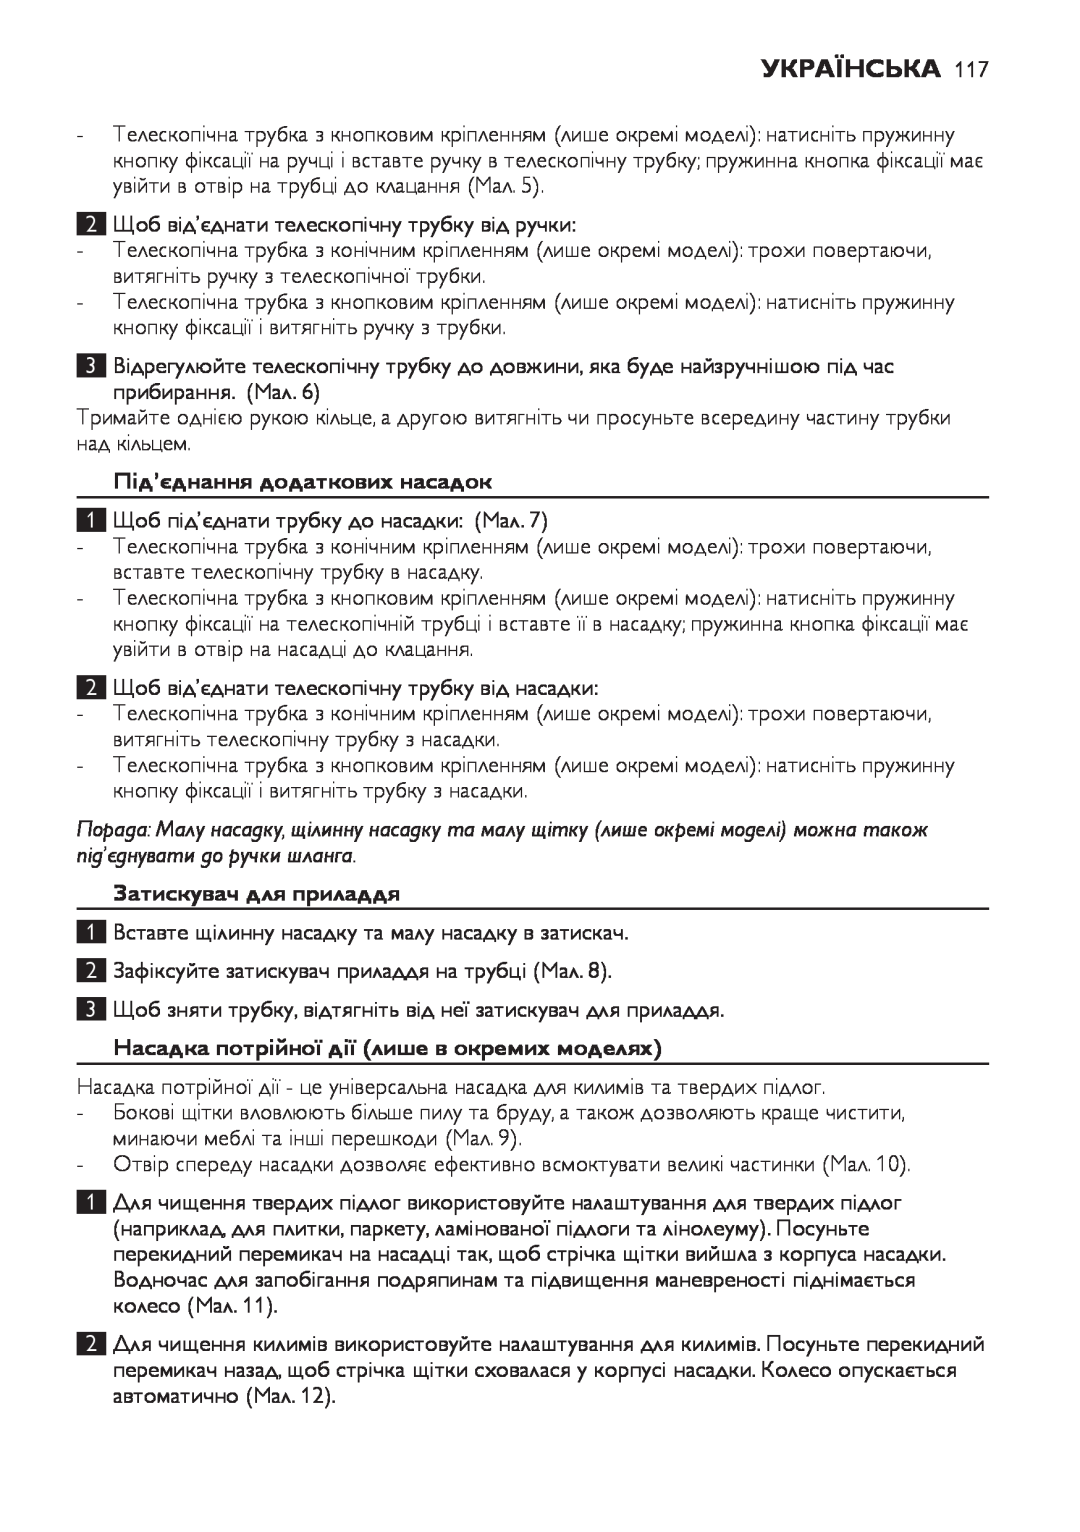 Philips FC8920-FC8910 manual Українська, Під’єднання додаткових насадок, Затискувач для приладдя 